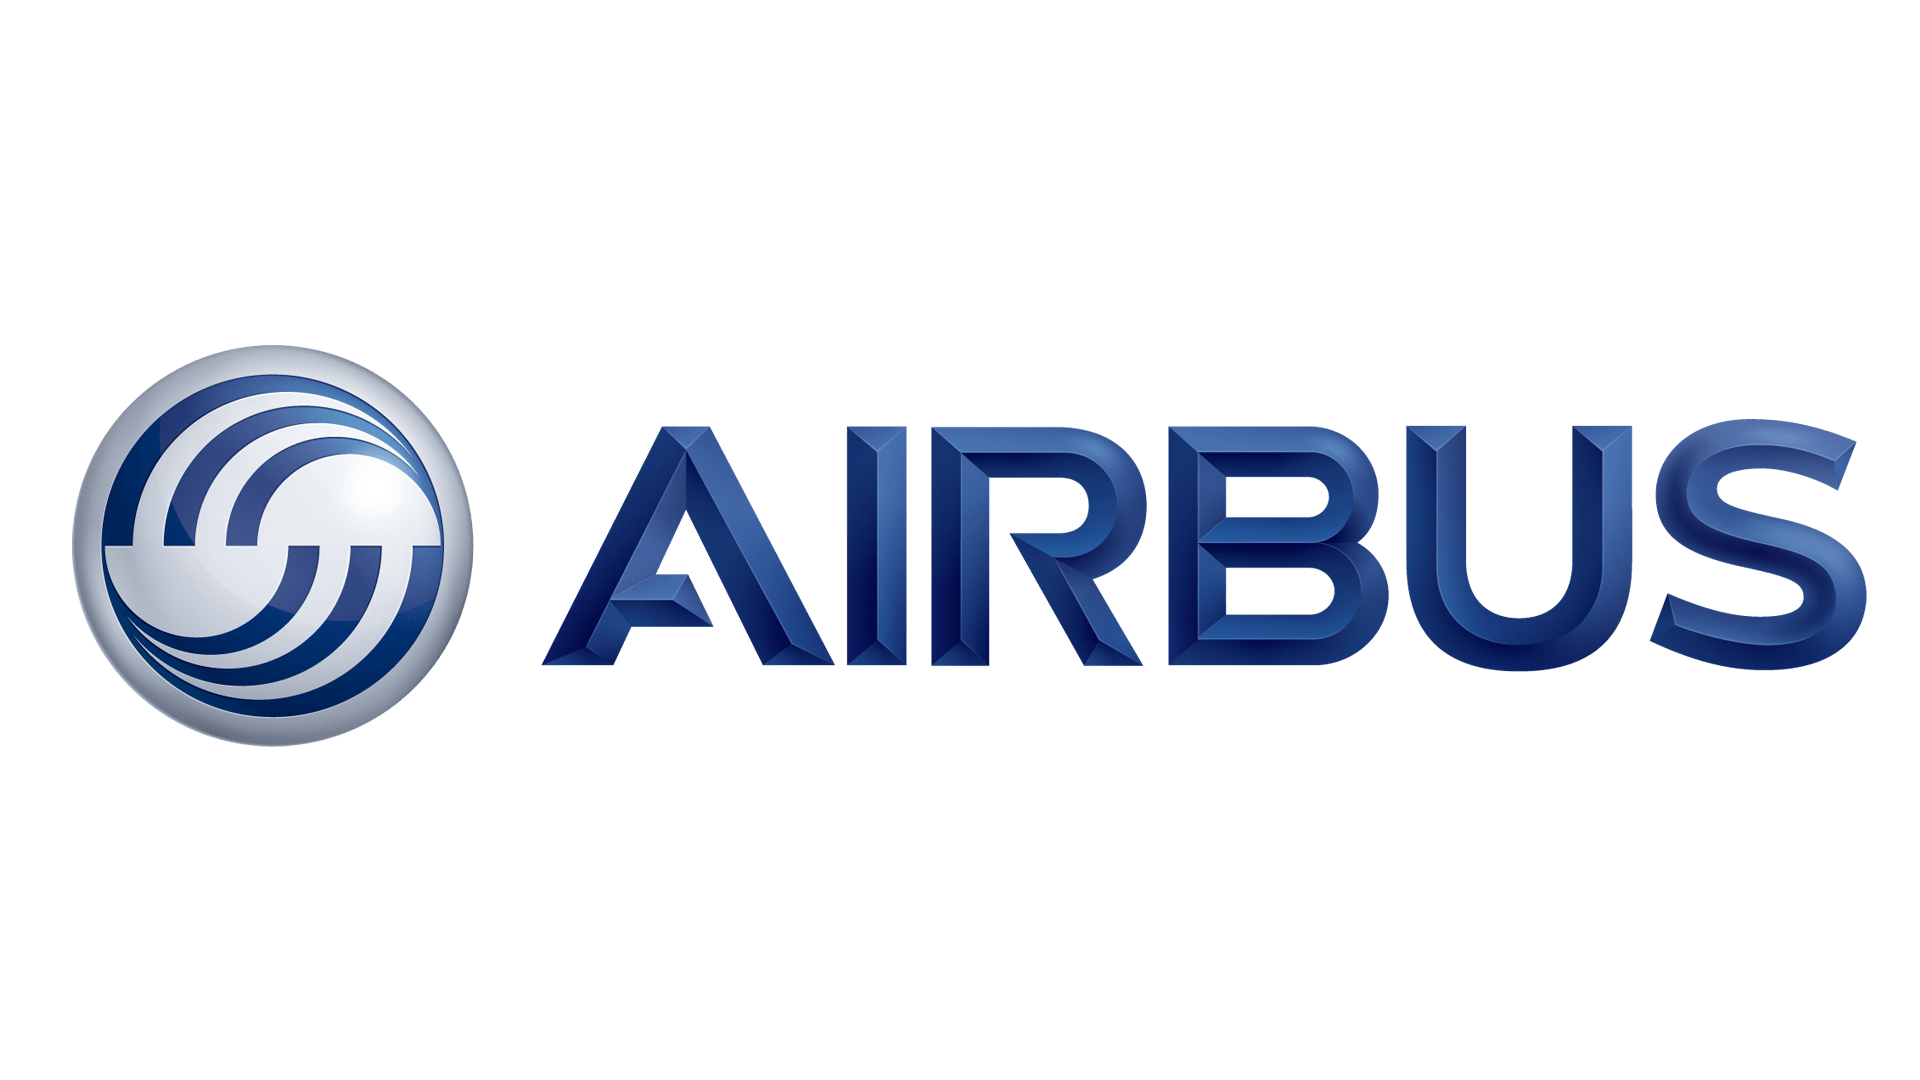 Airbus logo historie og betydning, evolusjon, symboler Airbus